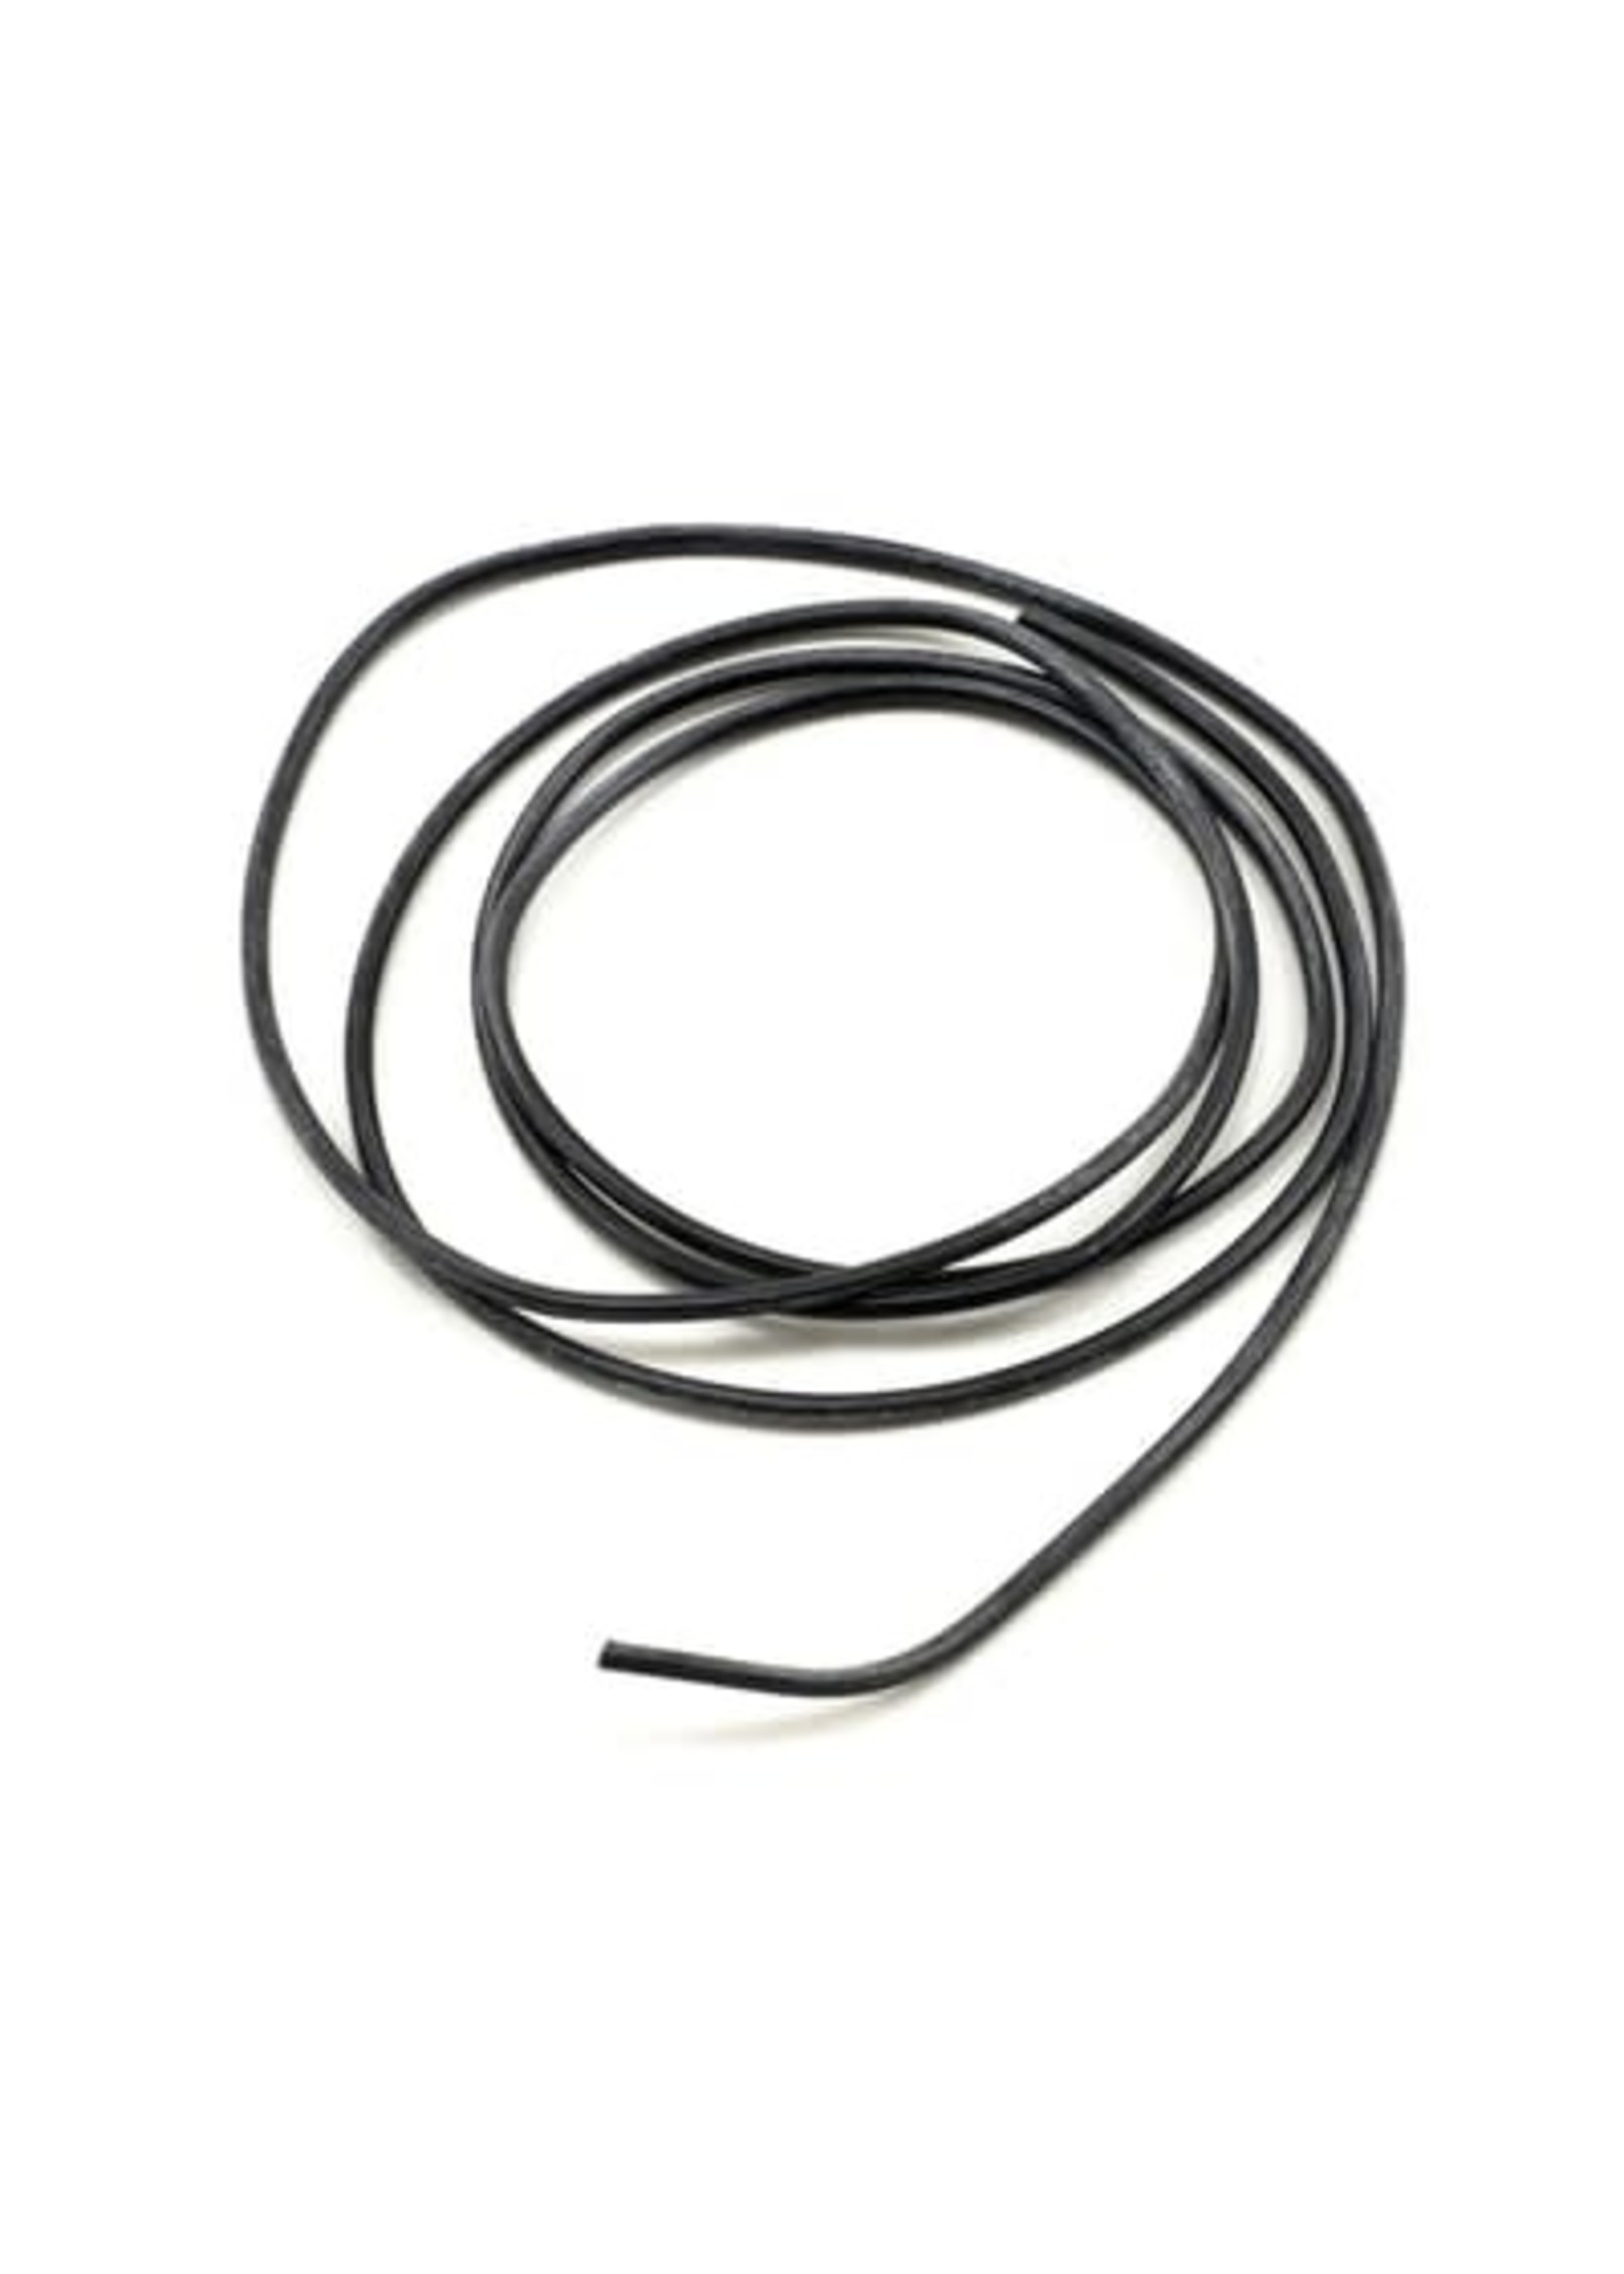 ProTek RC PTK-5609 ProTek RC 20awg Black Silicone Hookup Wire (1 Meter)